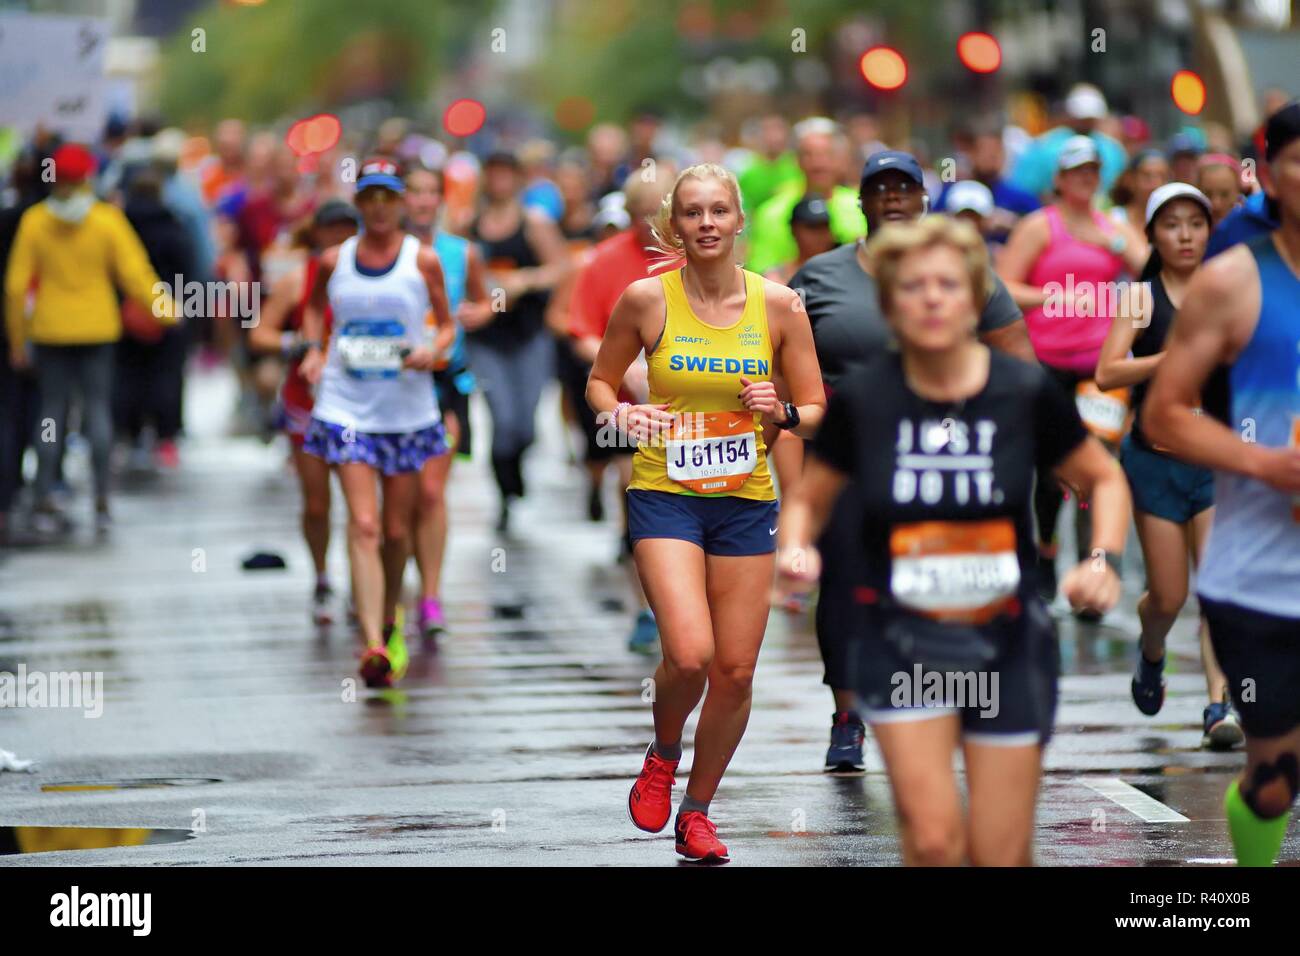 Chicago, Illinois, USA. Un coureur de la Suède, Erika Kaspersson, isolés au sein d'une mer de coureurs au Marathon de Chicago 2018. Banque D'Images